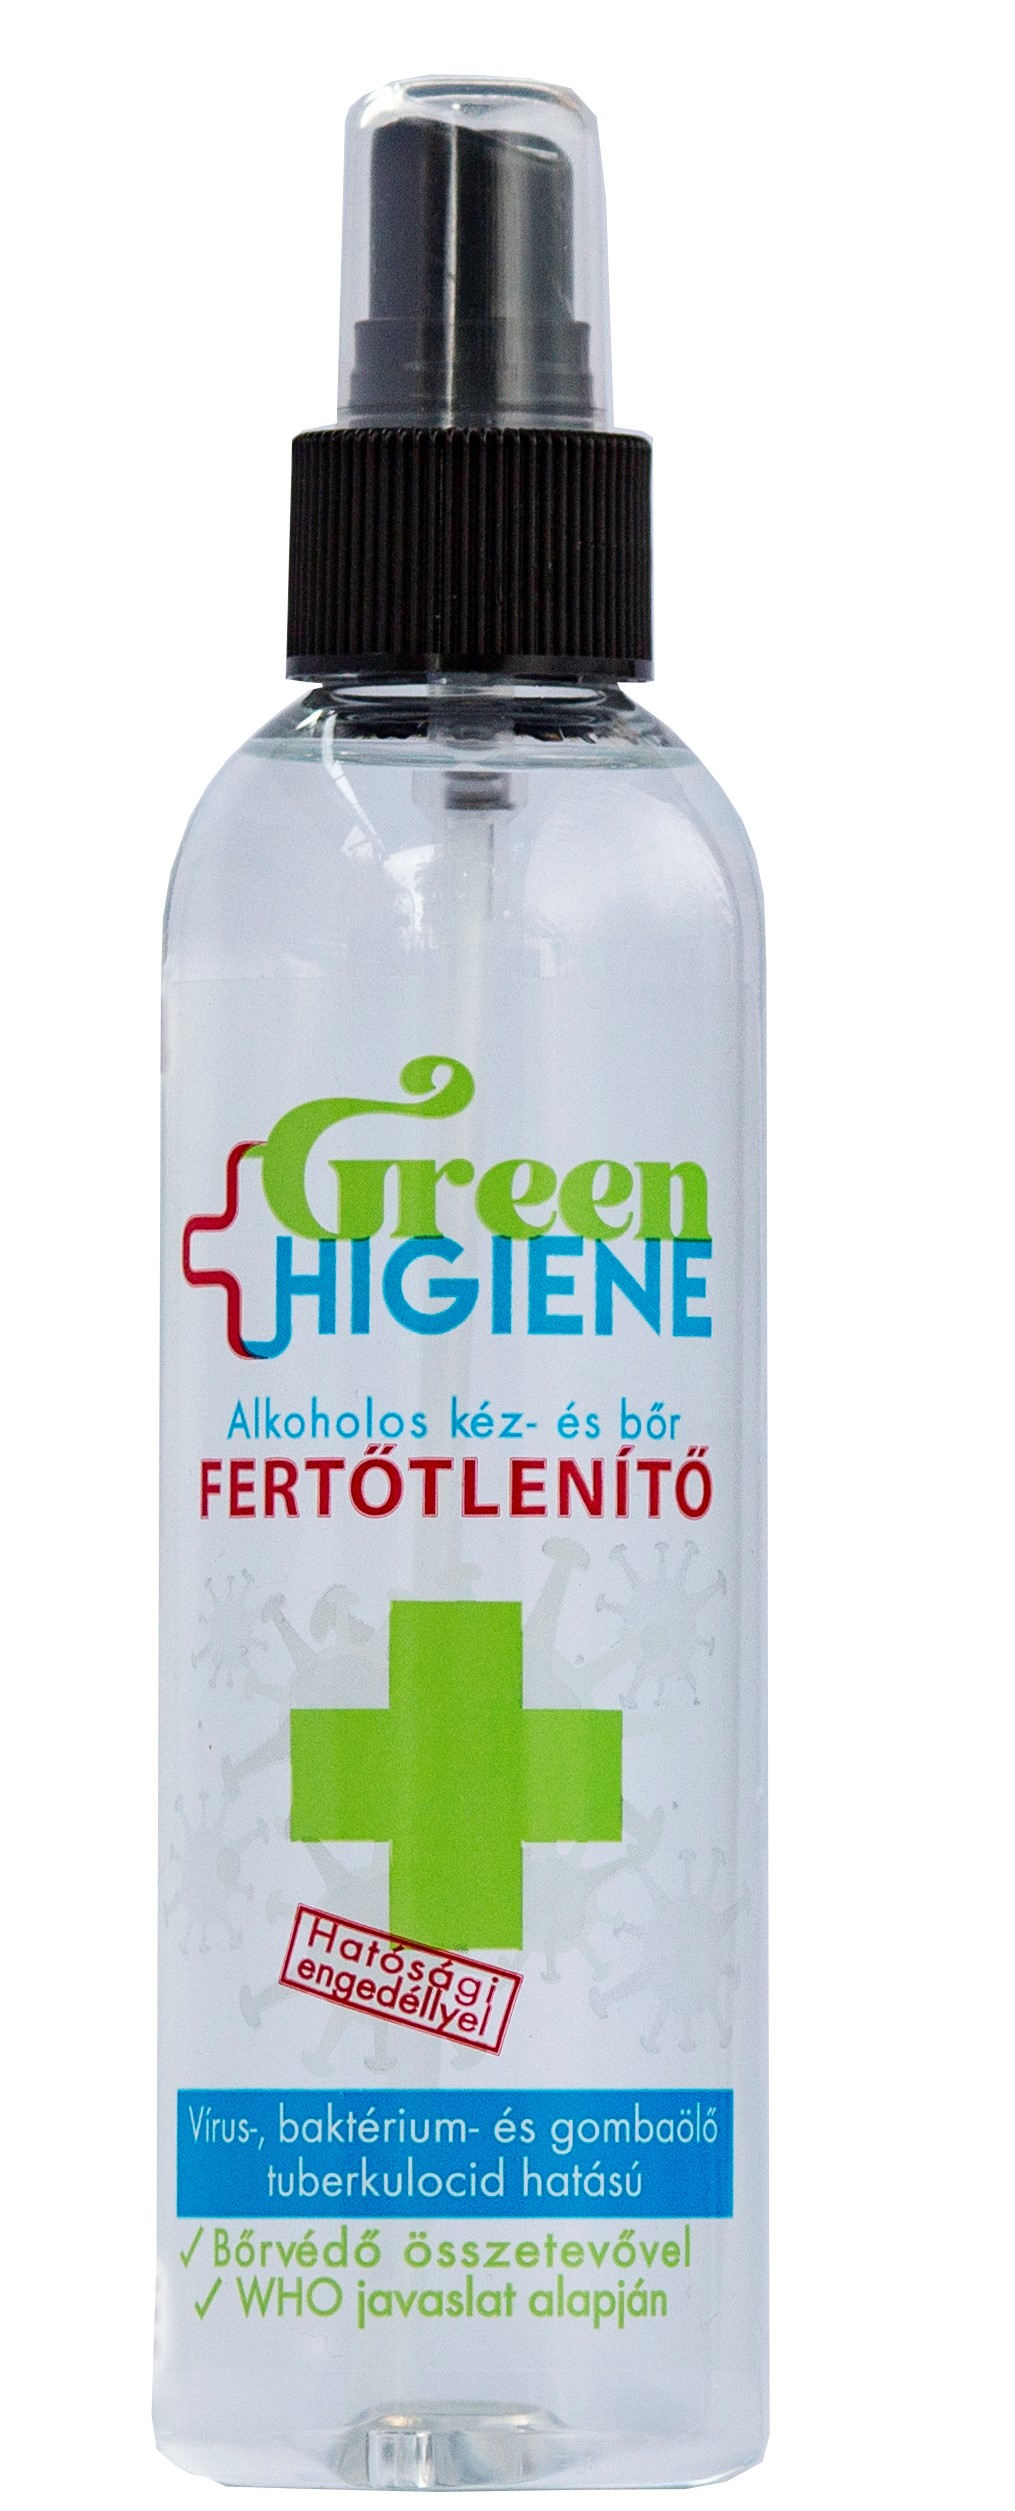 *Green Higiene Alkoholos Kézfertőtlenítő folyadék 200 ml